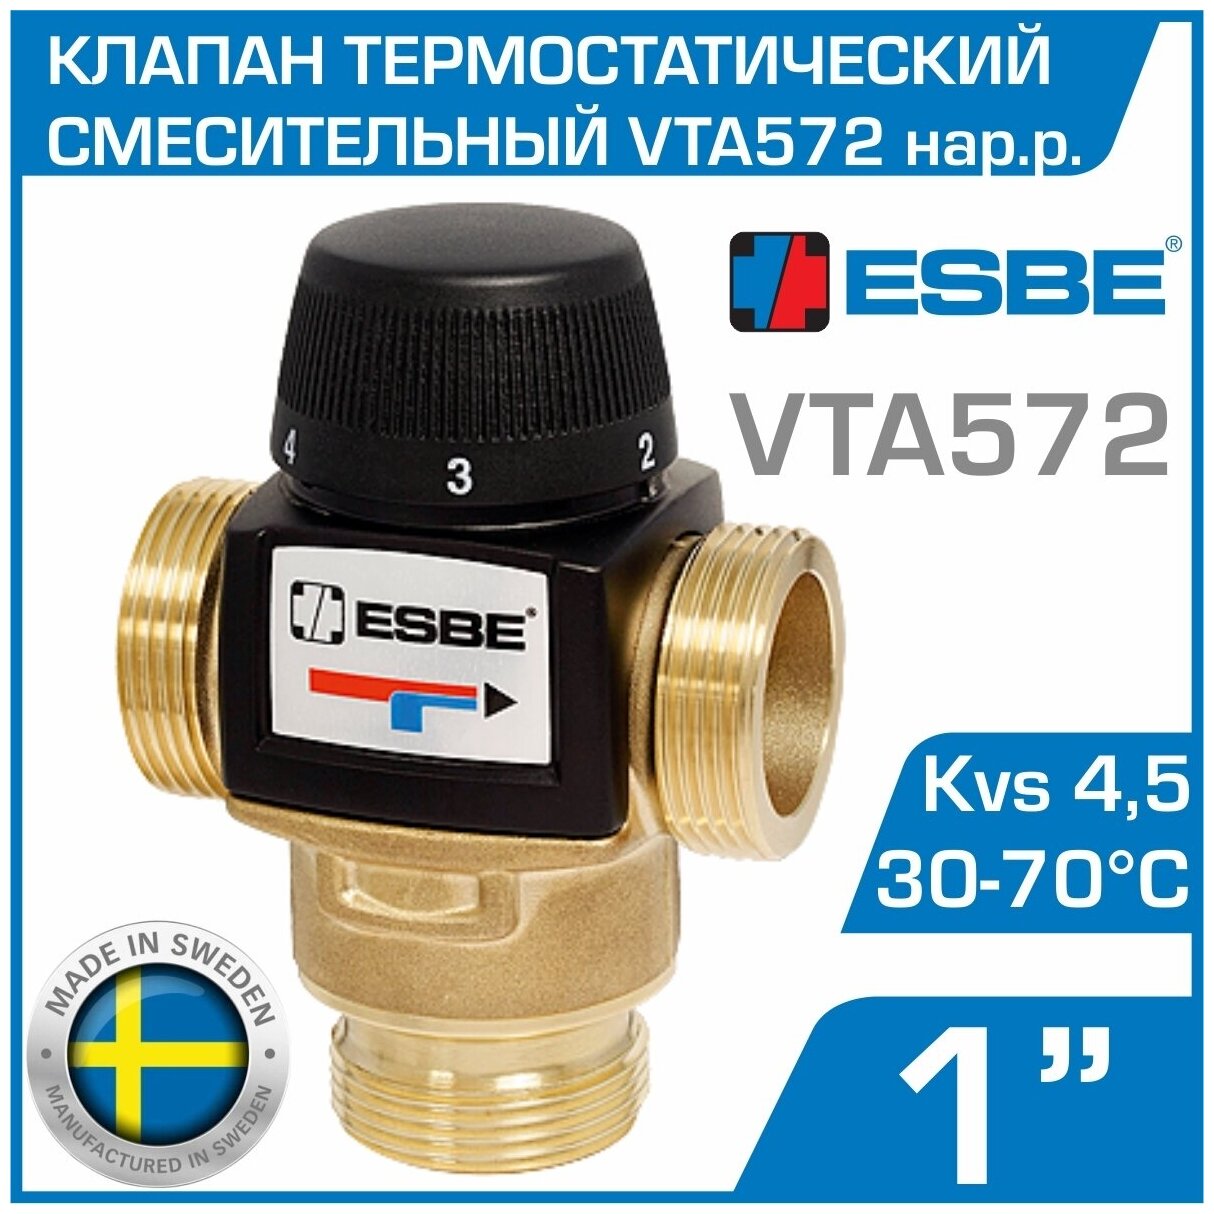 ESBE VTA572 (31702500) t 30-70 C, 1" нар. р, Kvs 4,5 - Термостатический смесительный клапан